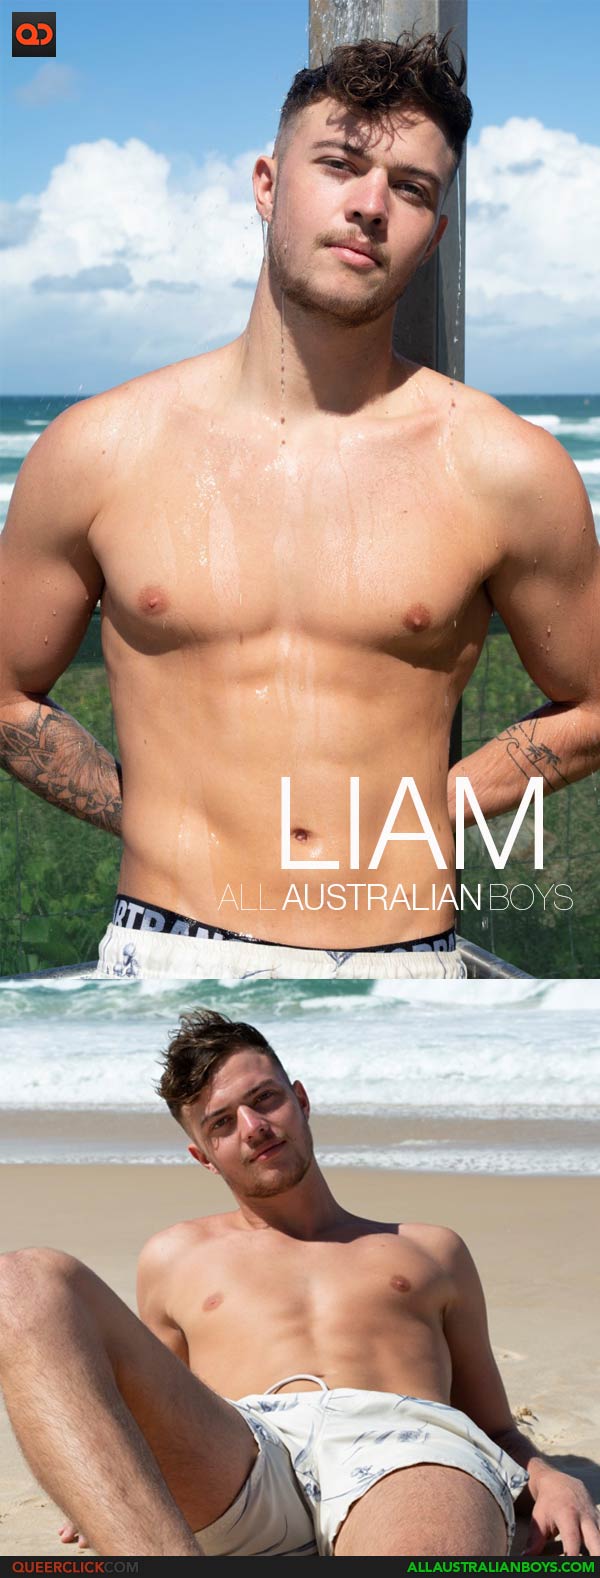 AllAustralianBoys: Liam